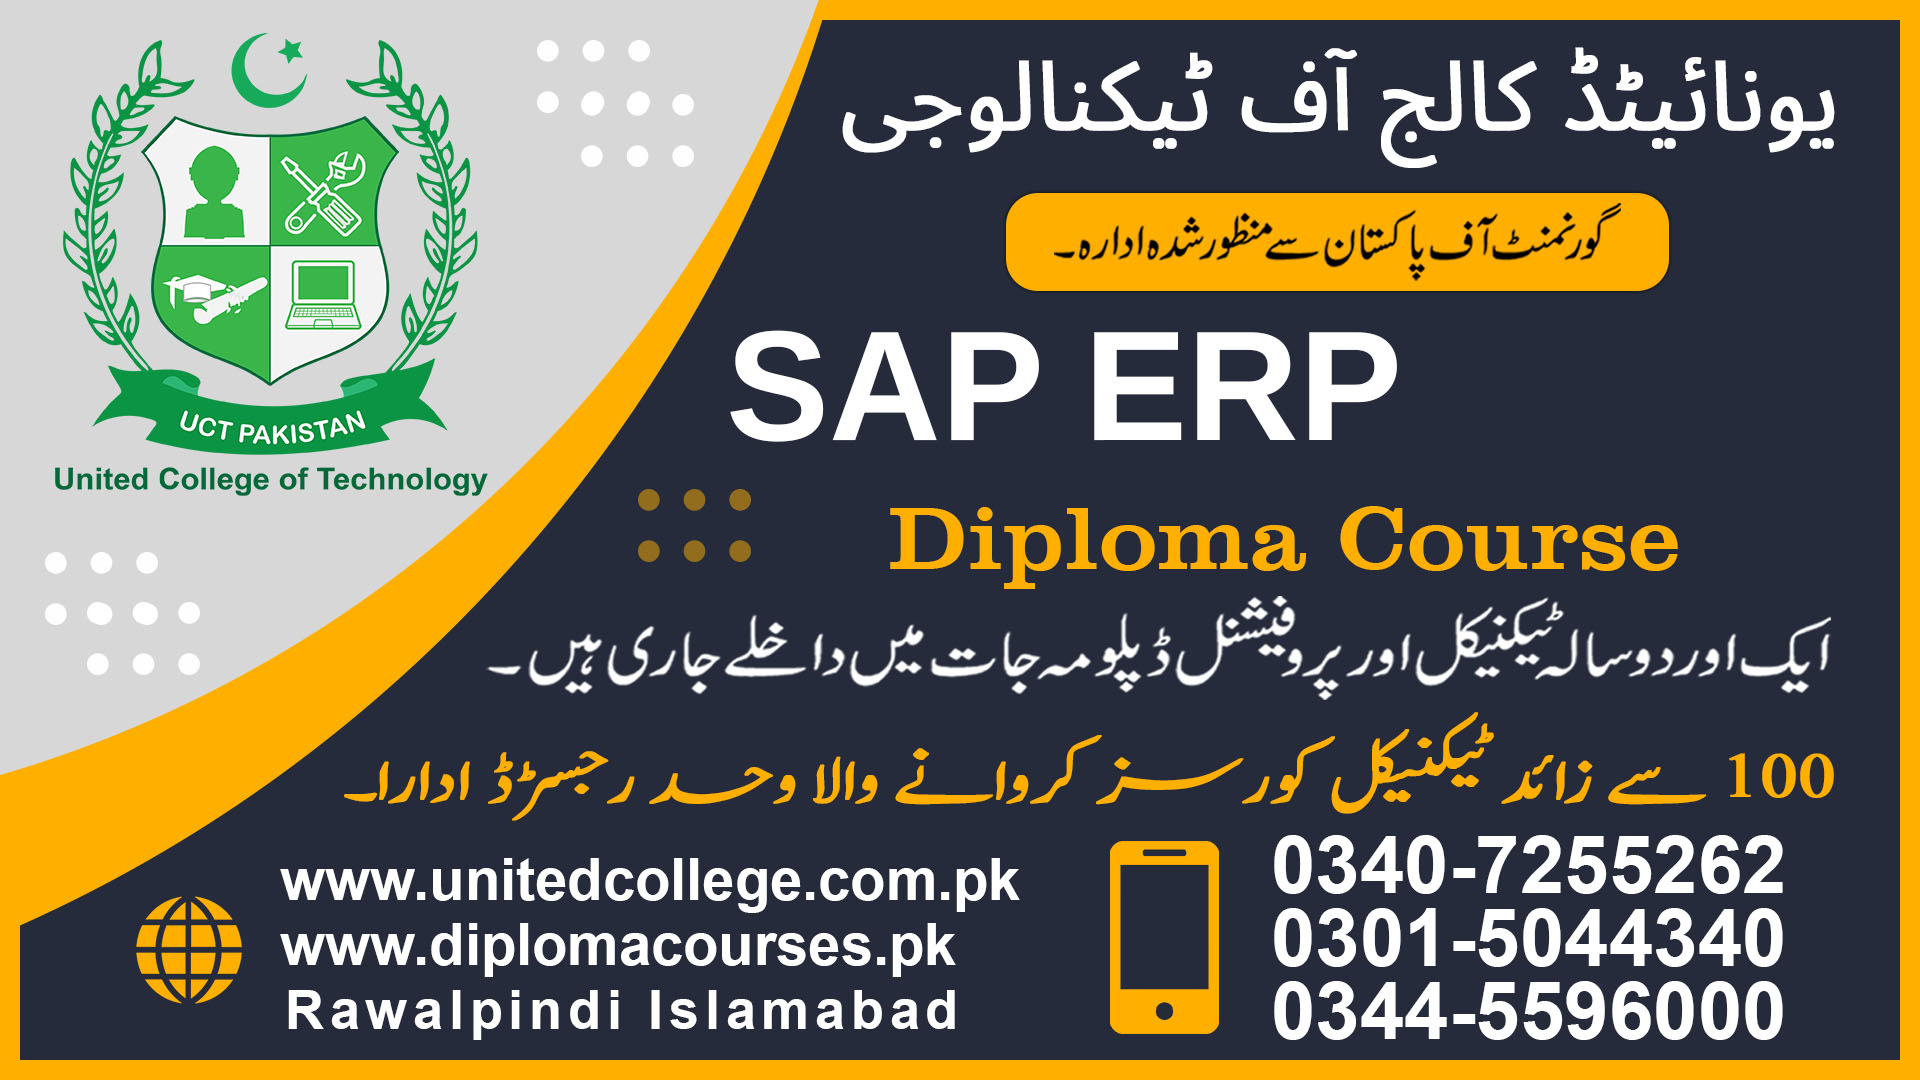 SAP ERP COURSE IN RAWALPINDI ISLAMABAD PAKISTAN